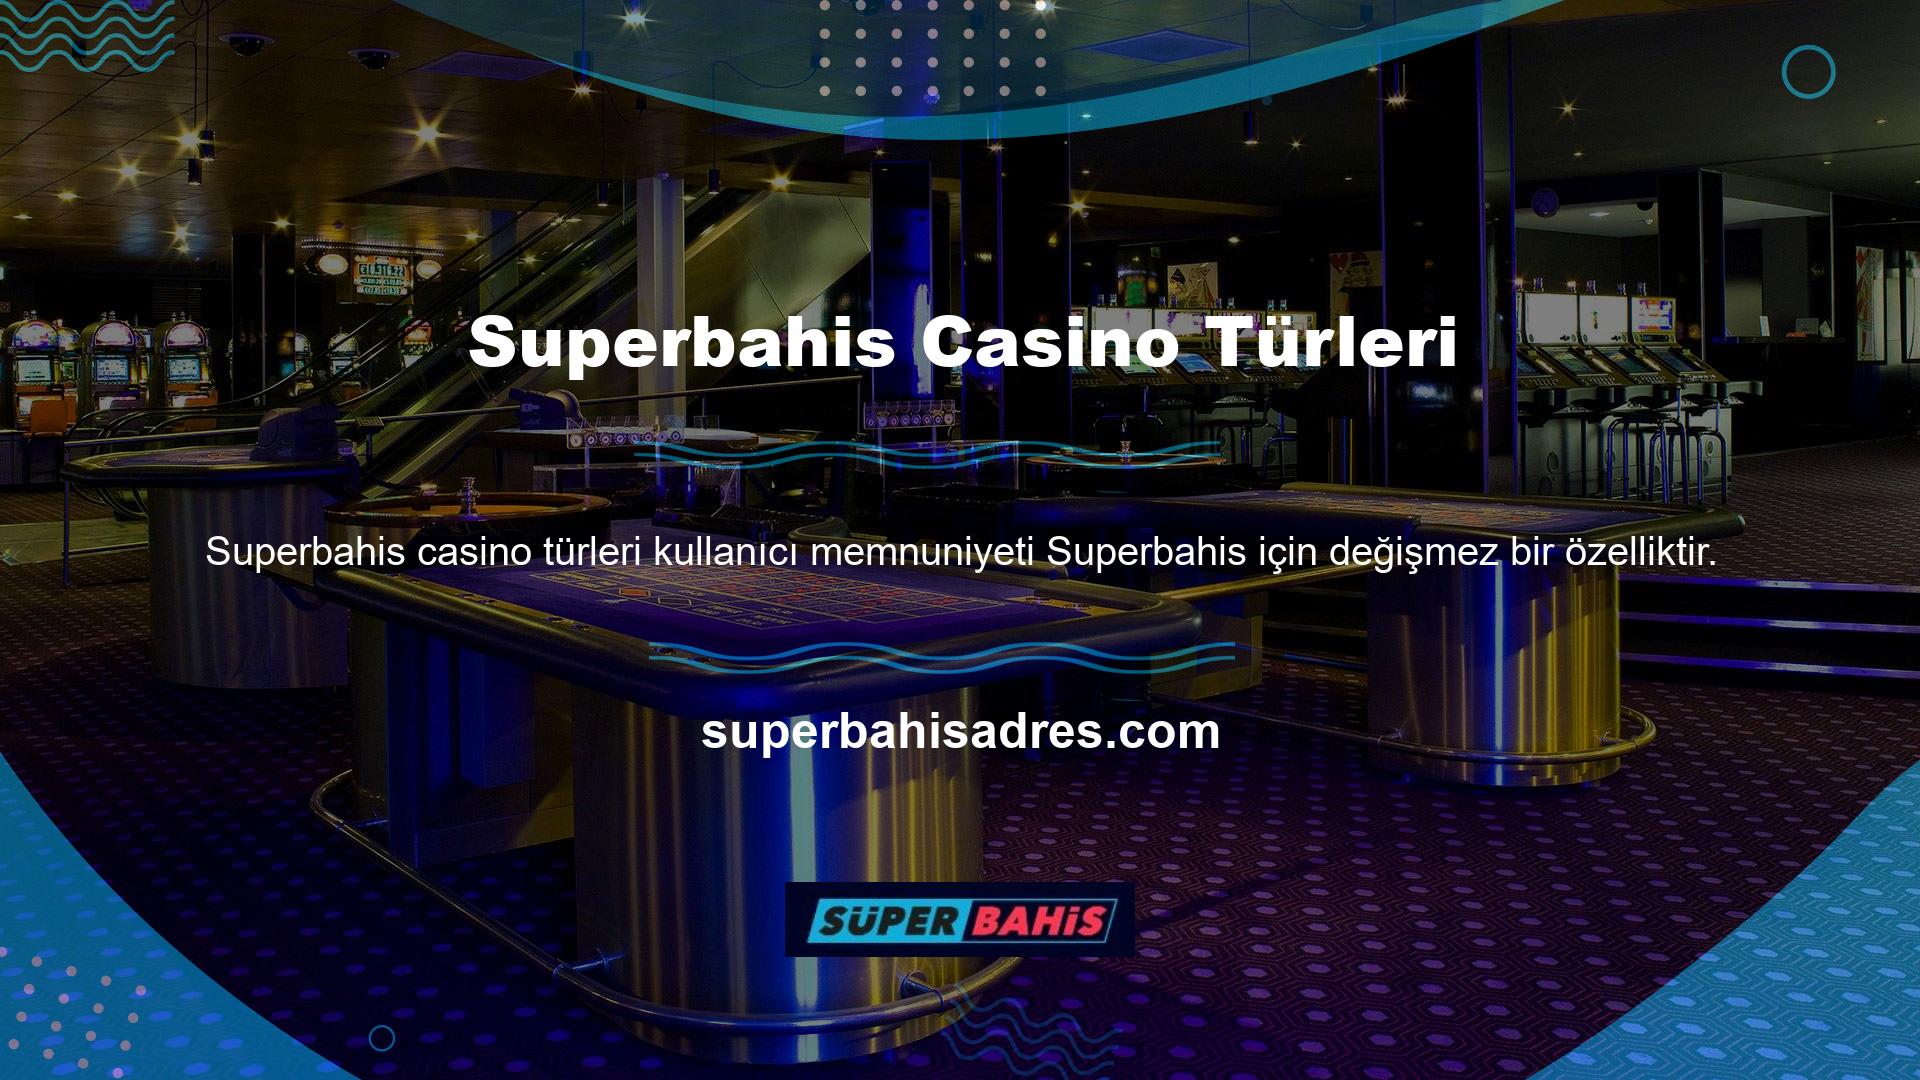 Superbahis Casino bölümü çeşitli bahis seçenekleri sunmaktadır